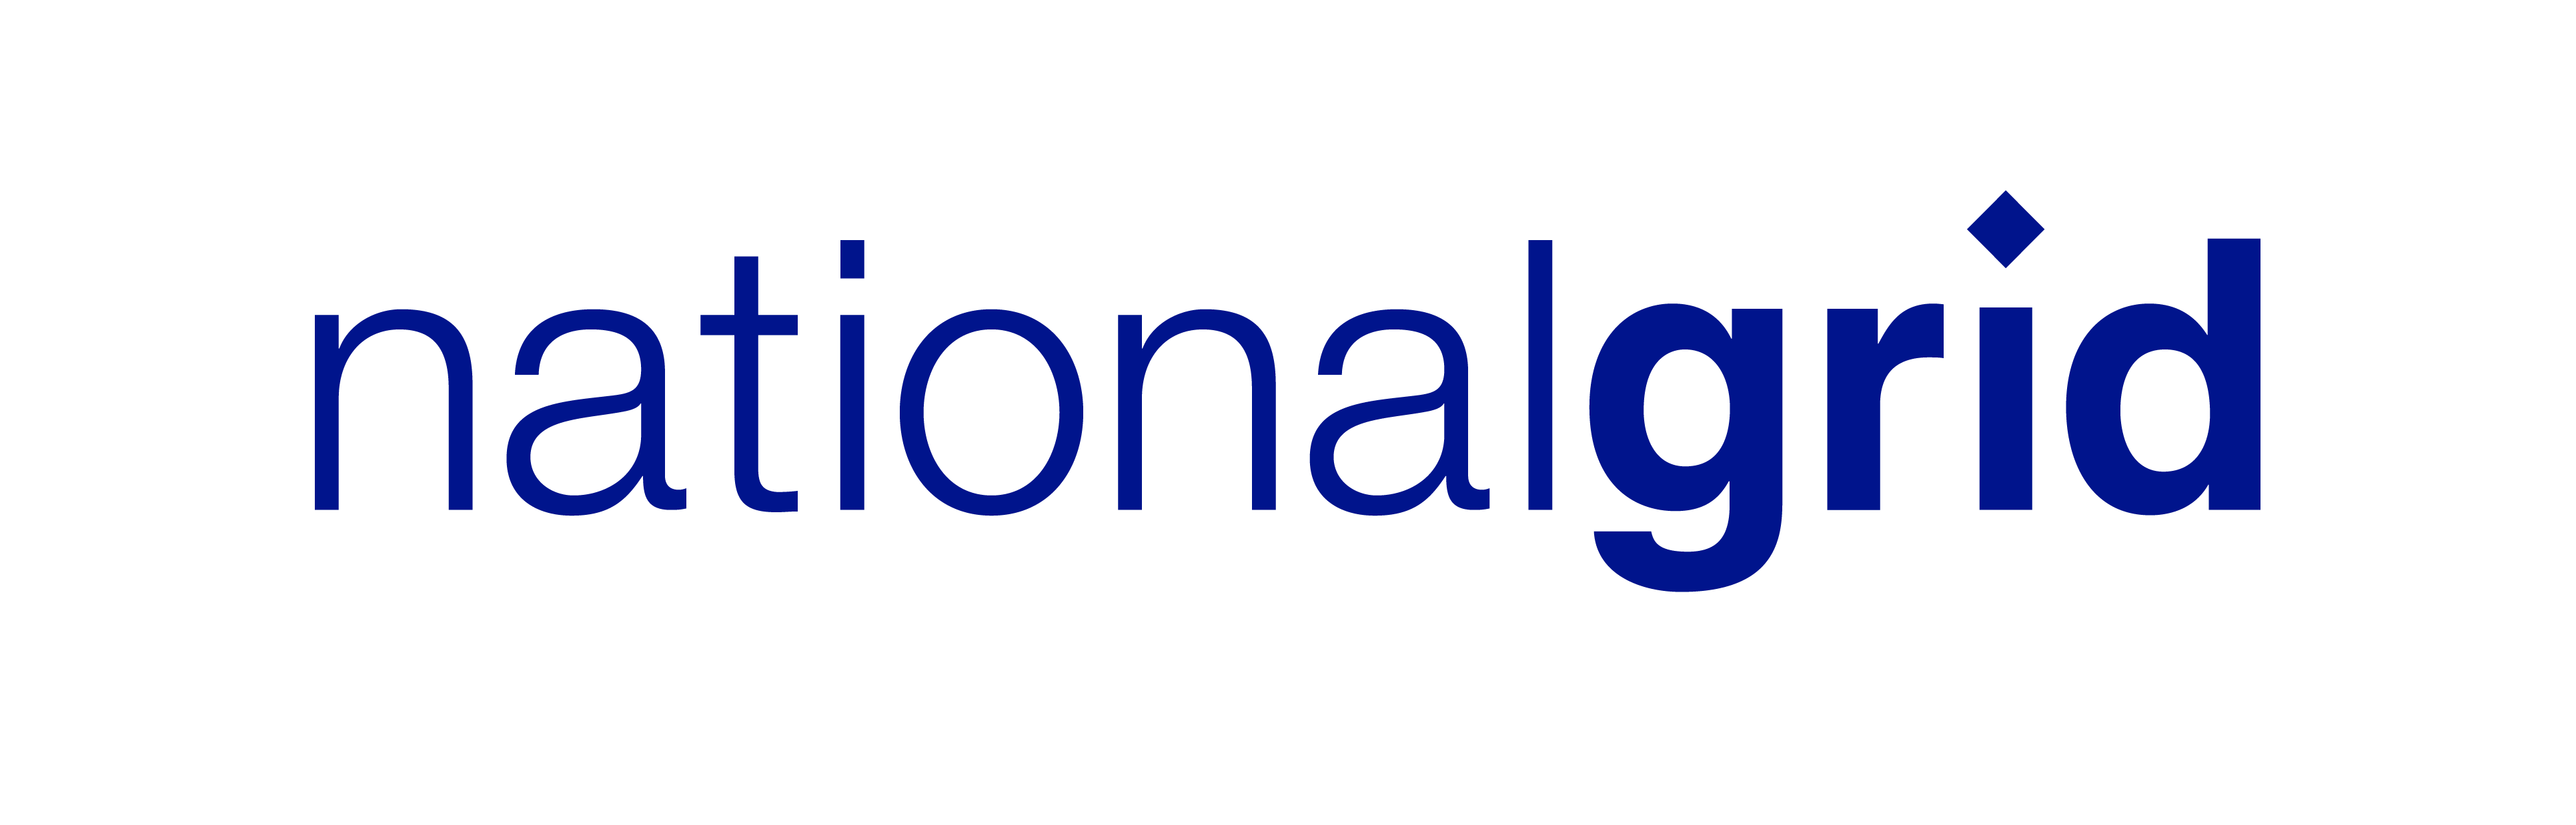 Image result for National Grid logo